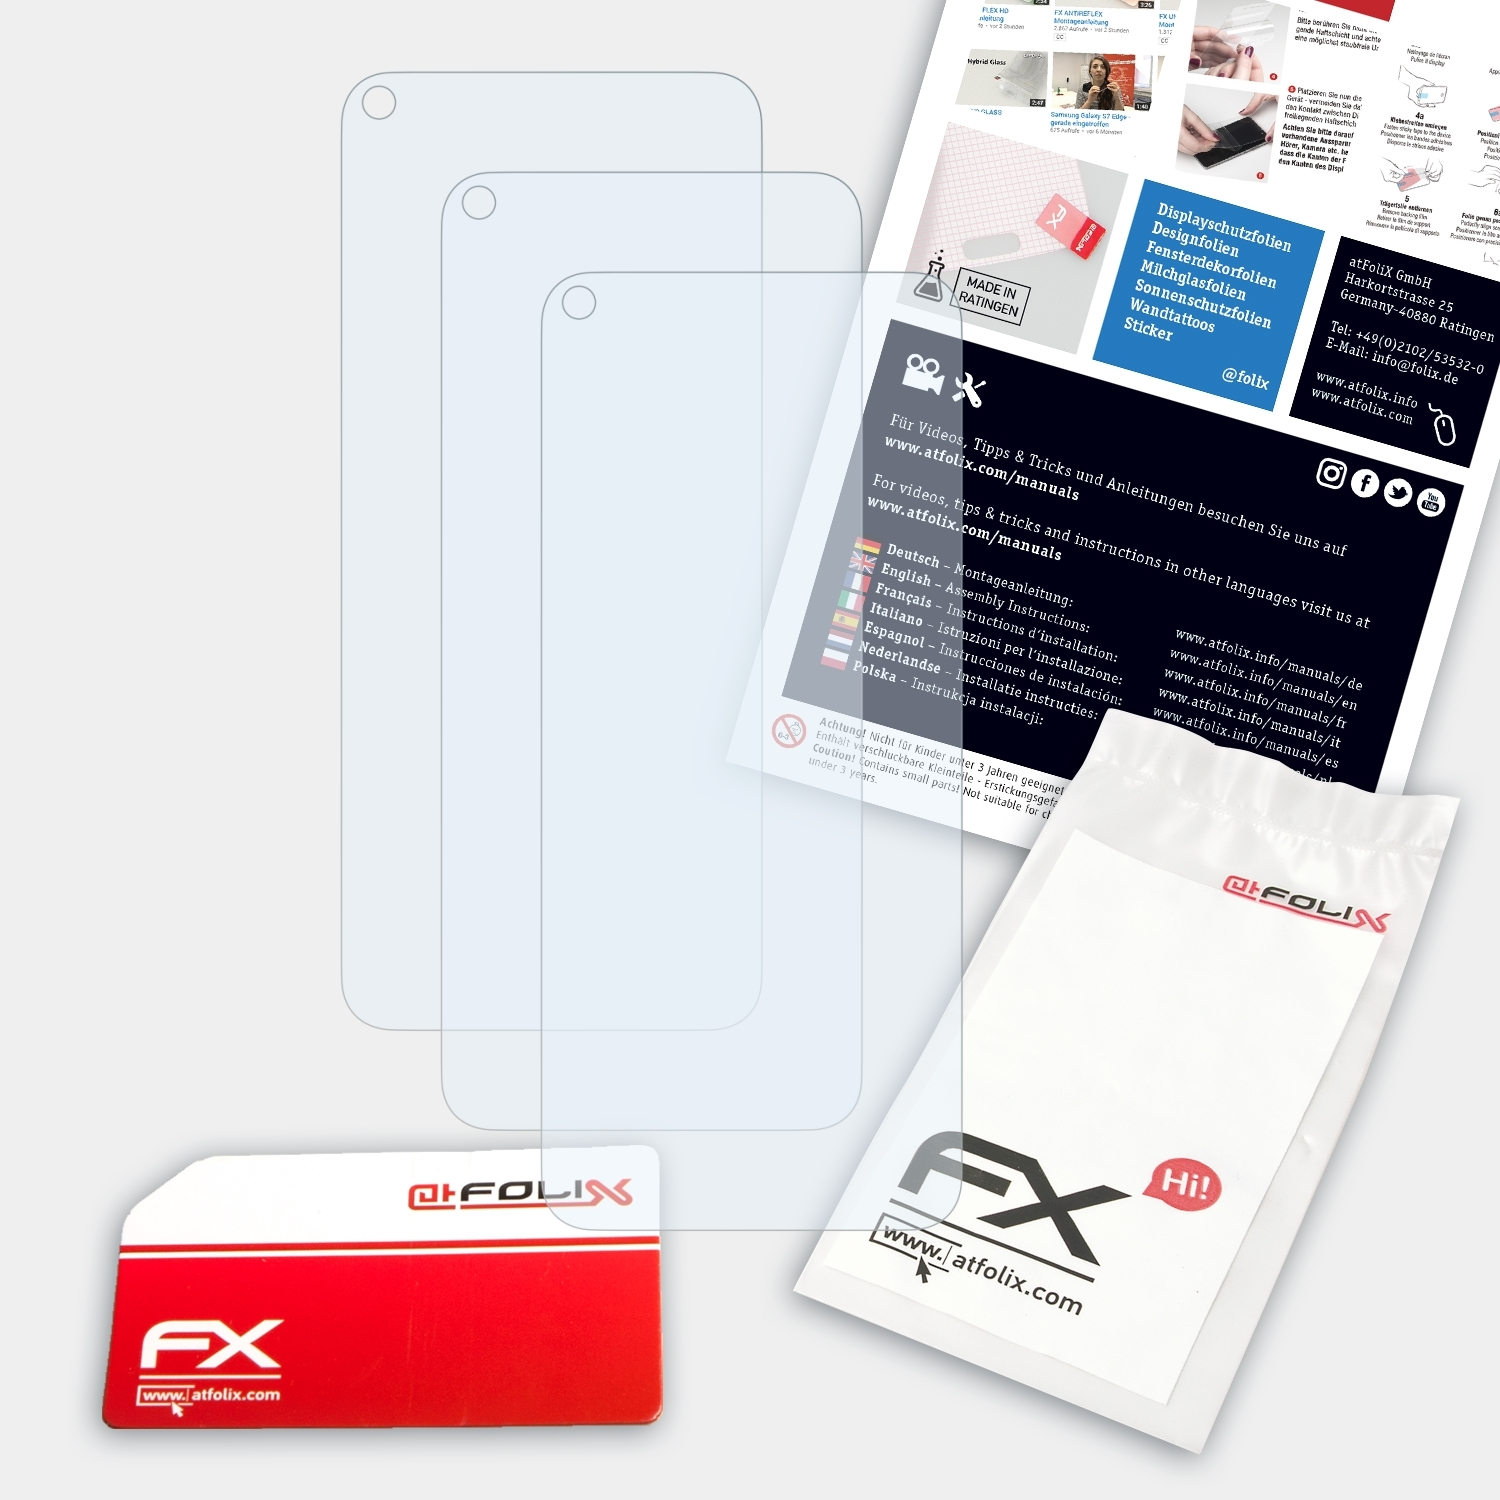 Oppo 5G) FX-Clear Displayschutz(für 3x ATFOLIX A74